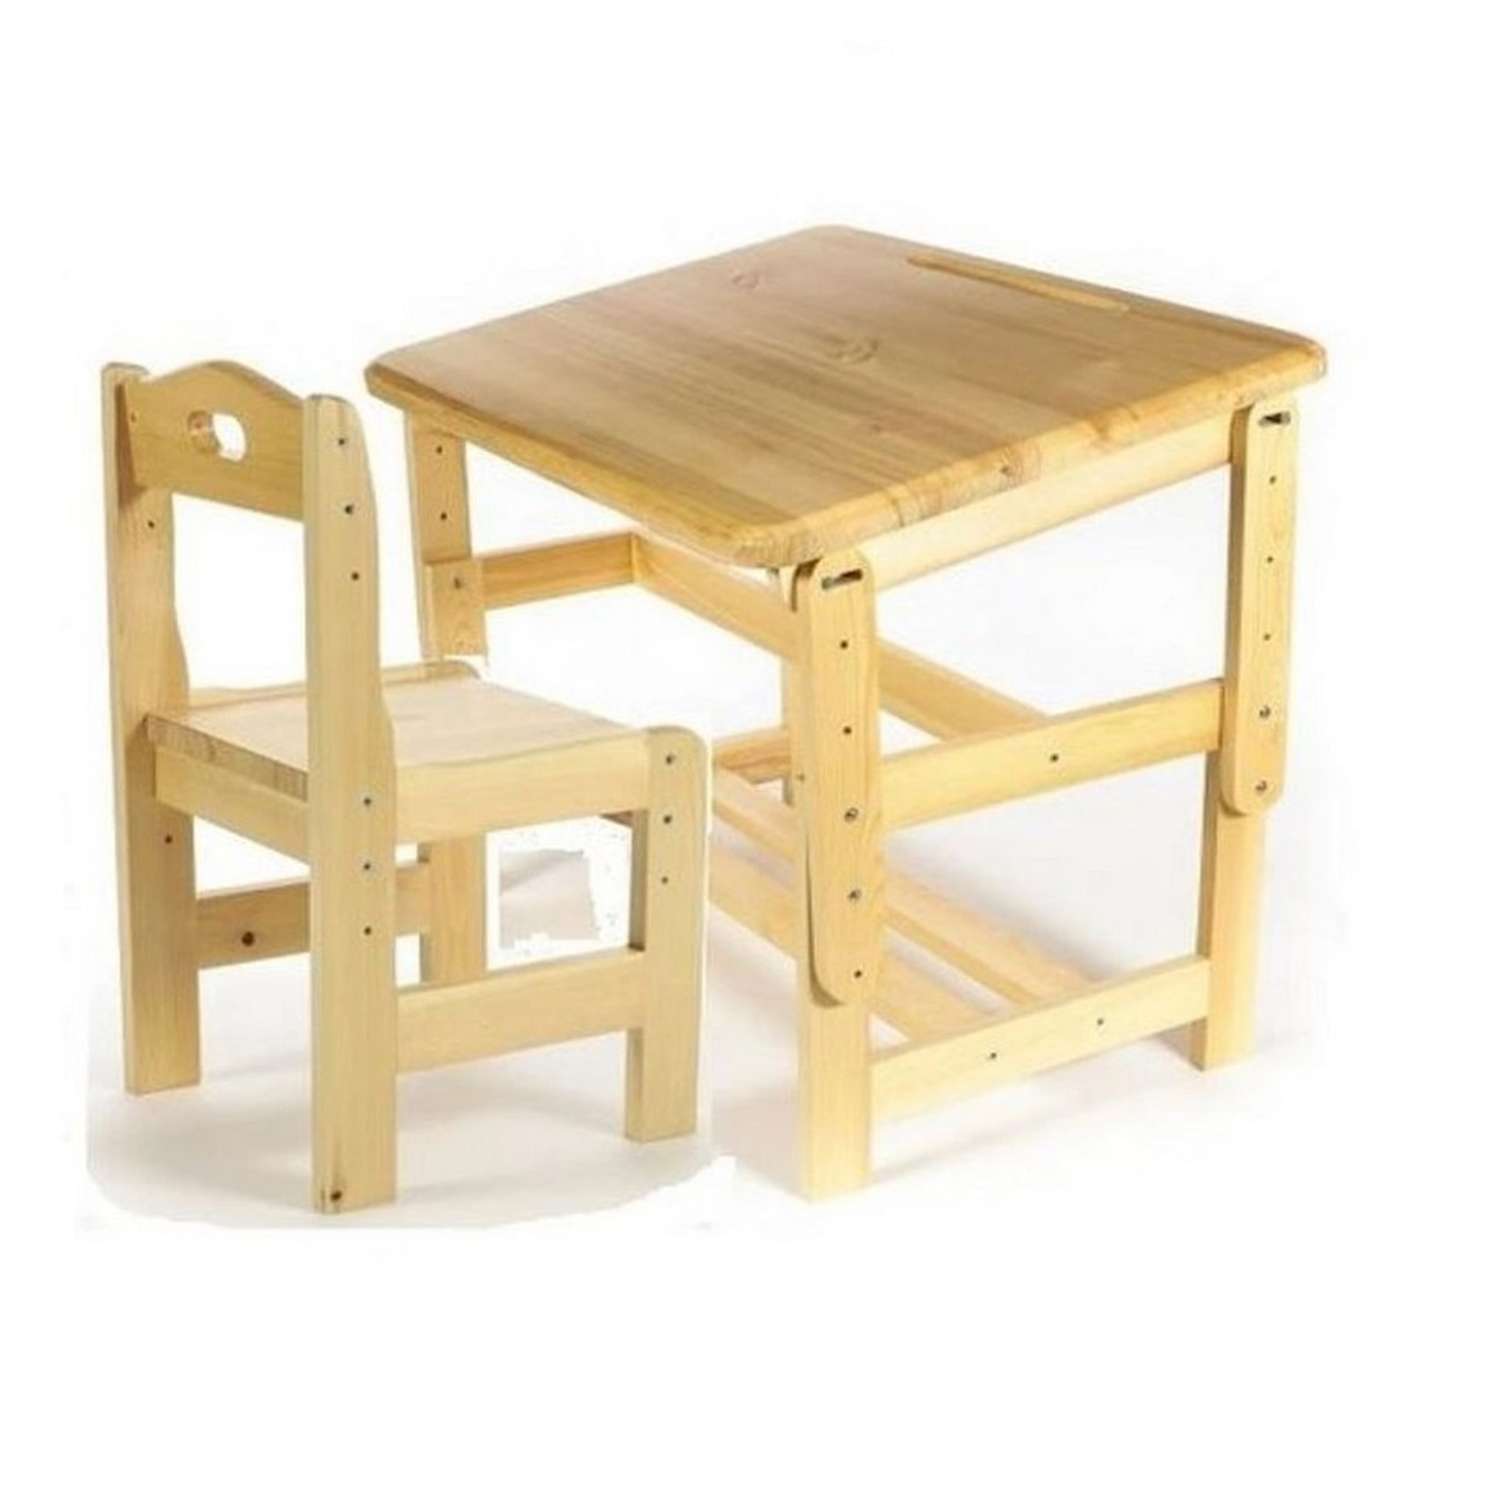 Набор Мебель для дошколят стол-парта со стулом регулируемый деревянный для детей от 1 до 4 лет - фото 1